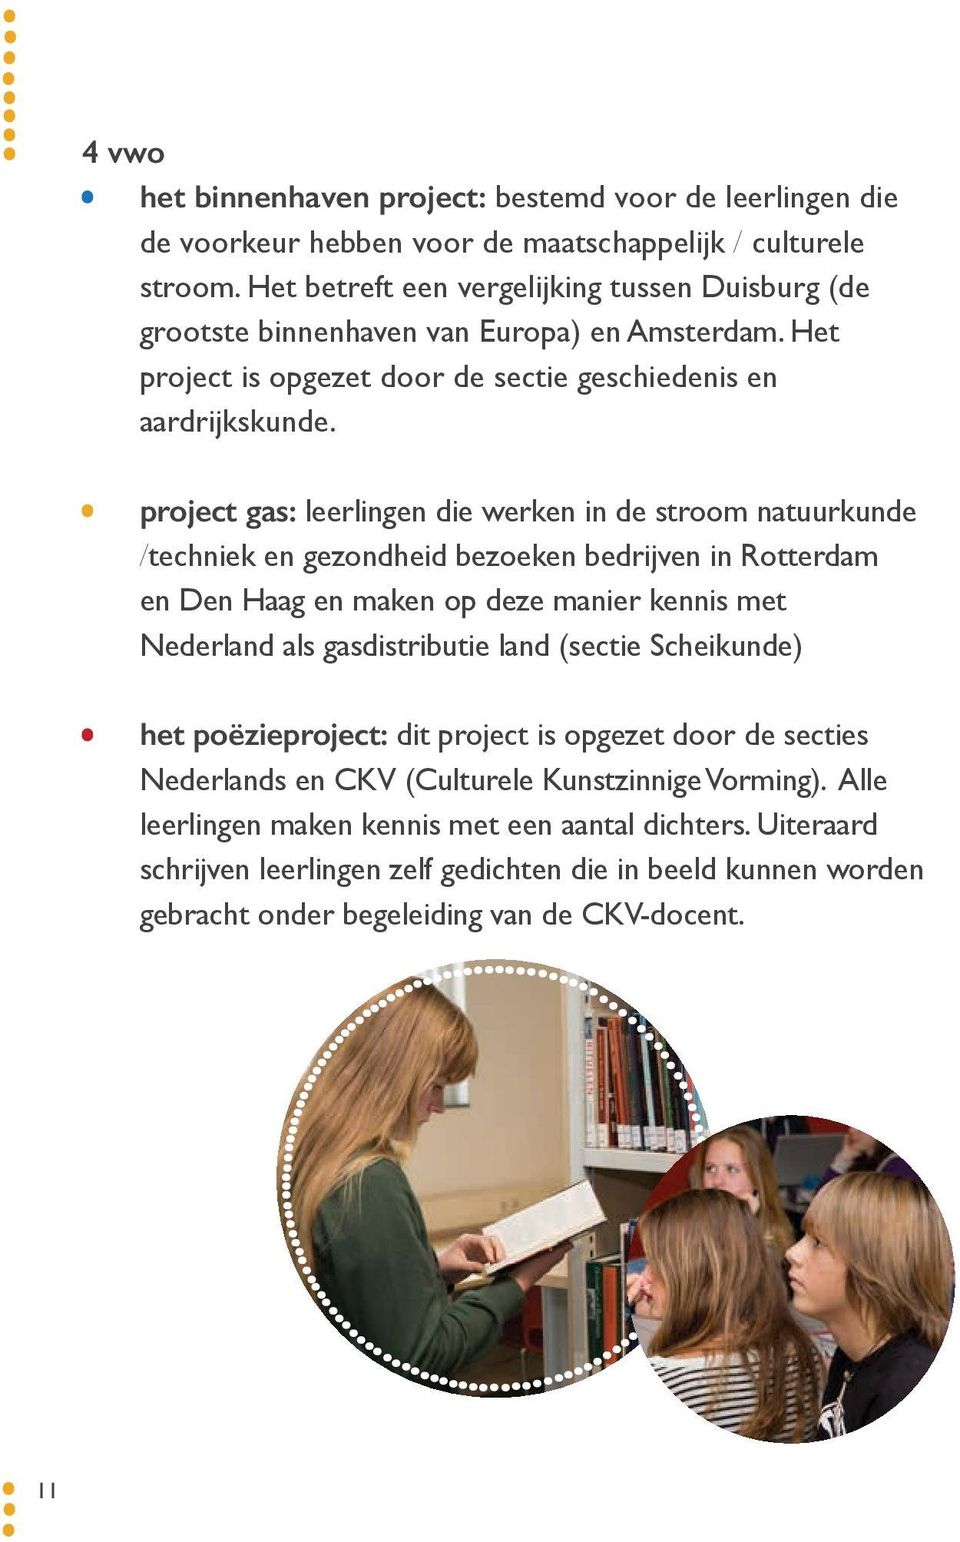 project gas: leerlingen die werken in de stroom natuurkunde /techniek en gezondheid bezoeken bedrijven in Rotterdam en Den Haag en maken op deze manier kennis met Nederland als gasdistributie land